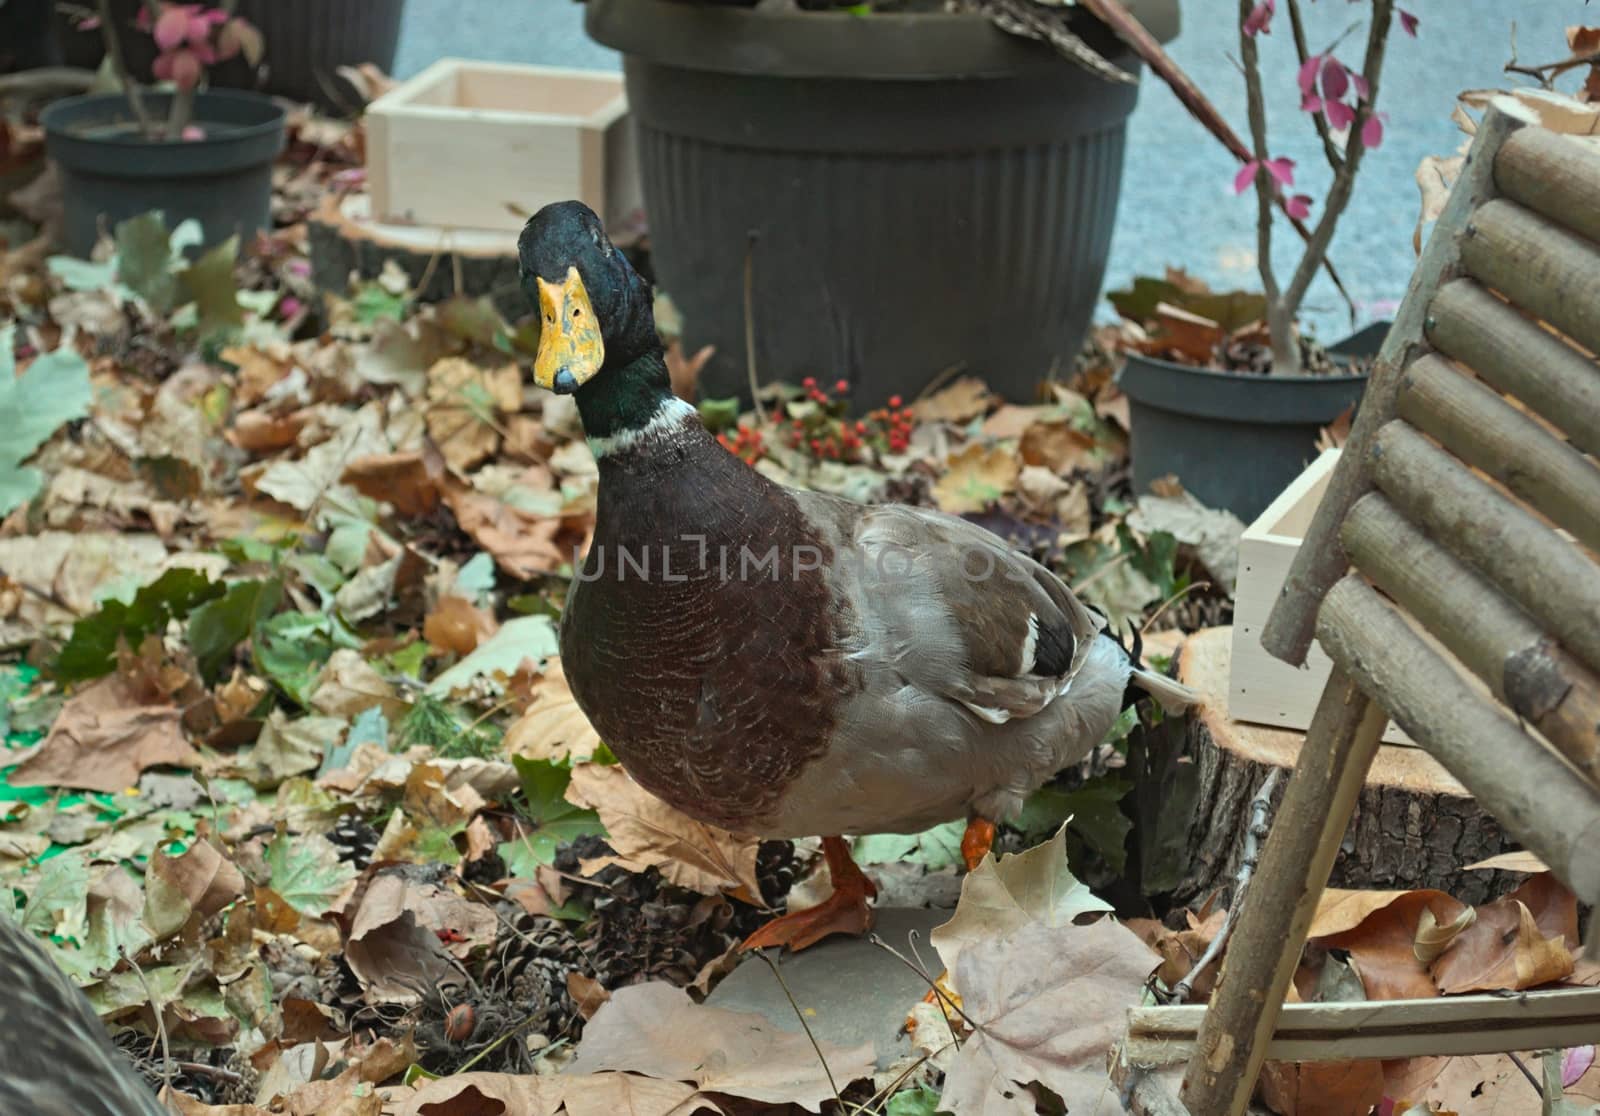 Stuffed duck watching at me, autumn arrangement